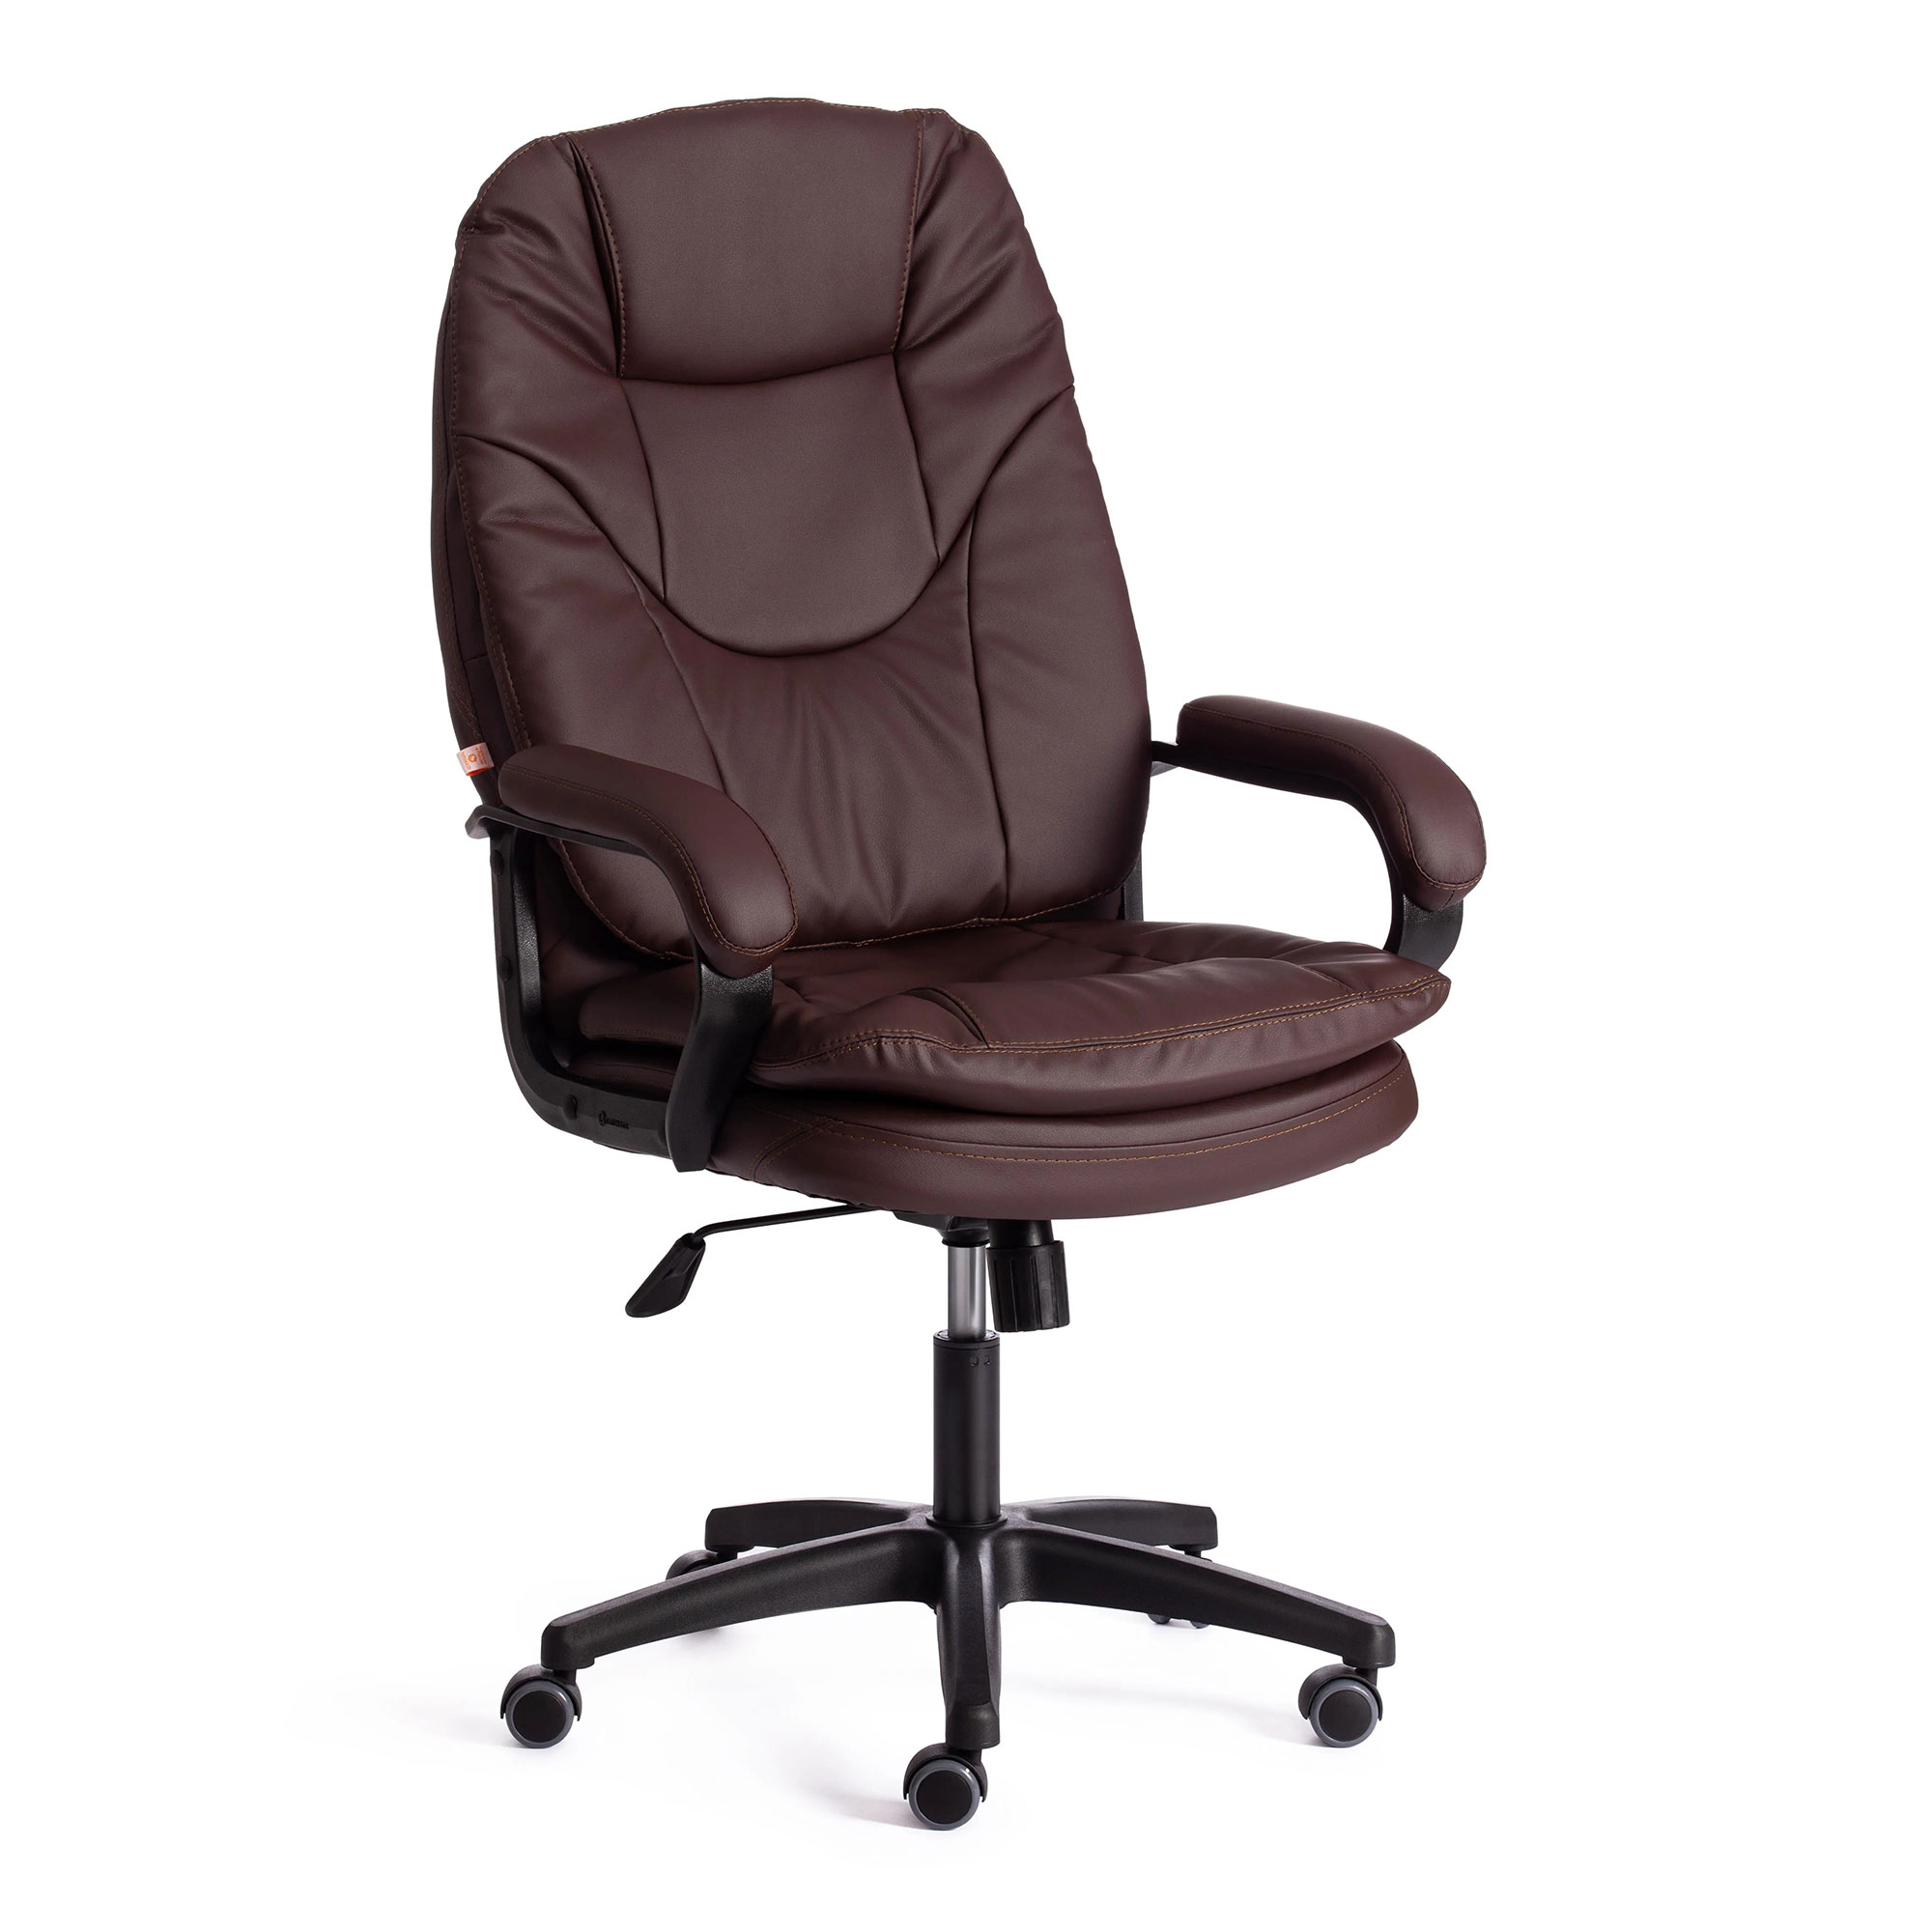 Компьютерное кресло TC Comfort коричневое 66х46х133 см (19381) кресло dreambag comfort коричневое экокожа 150x90 см